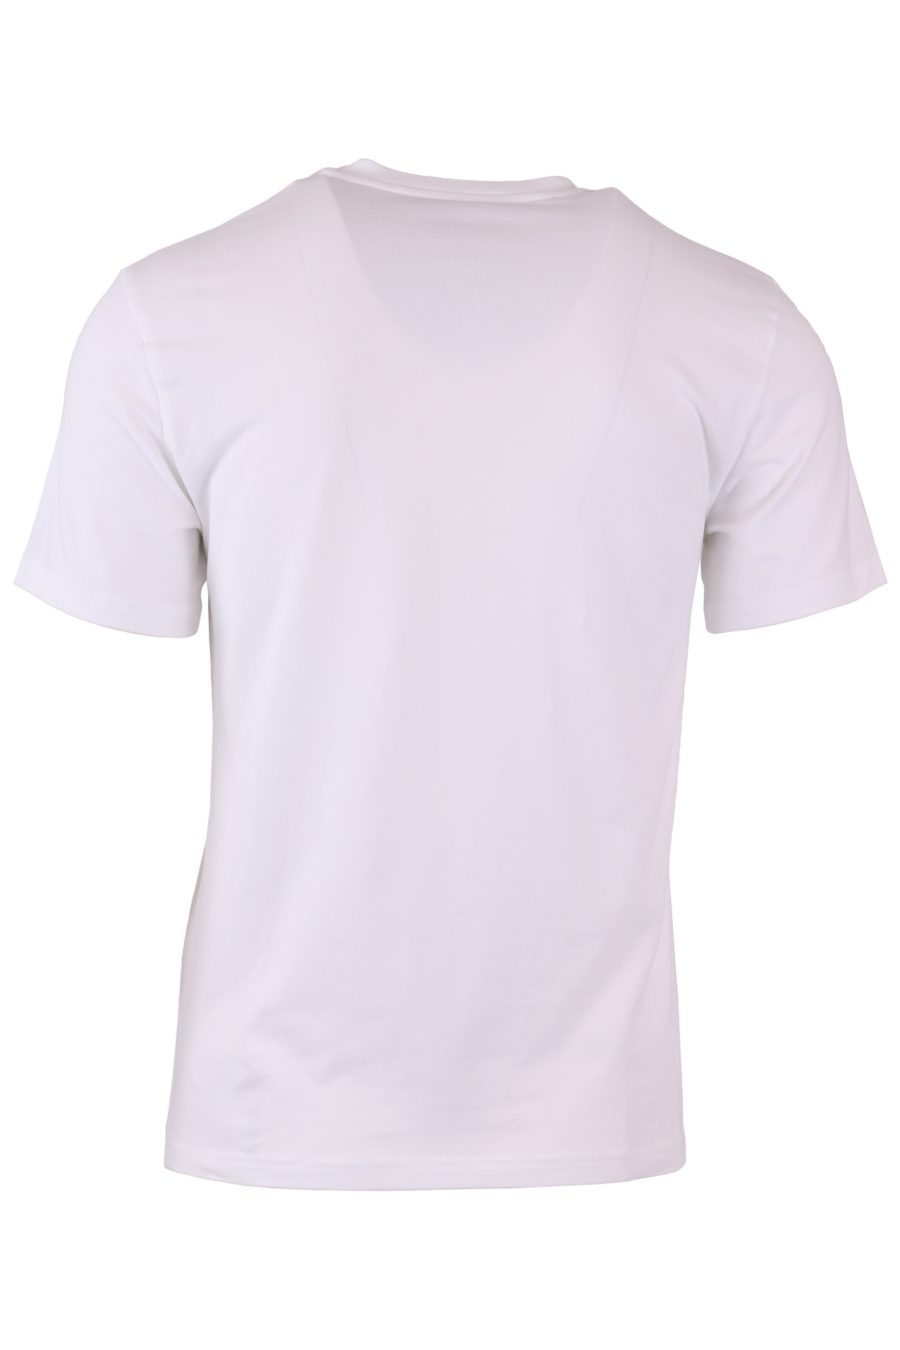 Moschino Couture T-shirt blanc avec logo et double question sur le devant - b005ef040599c9aaad43e541ce04a7022decaf84